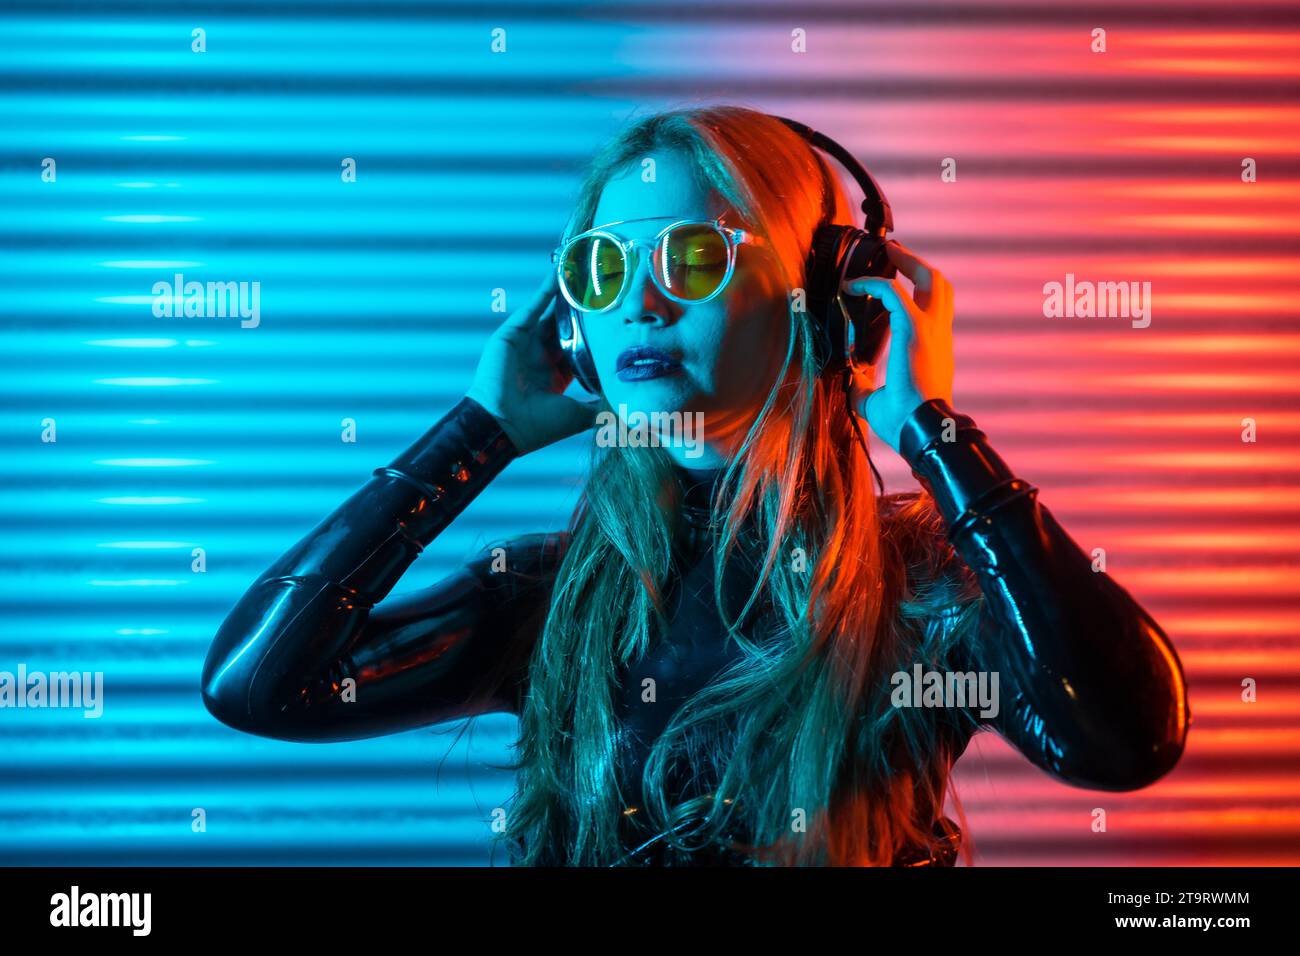 Konzentrierte Frau, die nachts in einem urbanen Raum mit geschlossenen Augen Musik hört Stockfoto